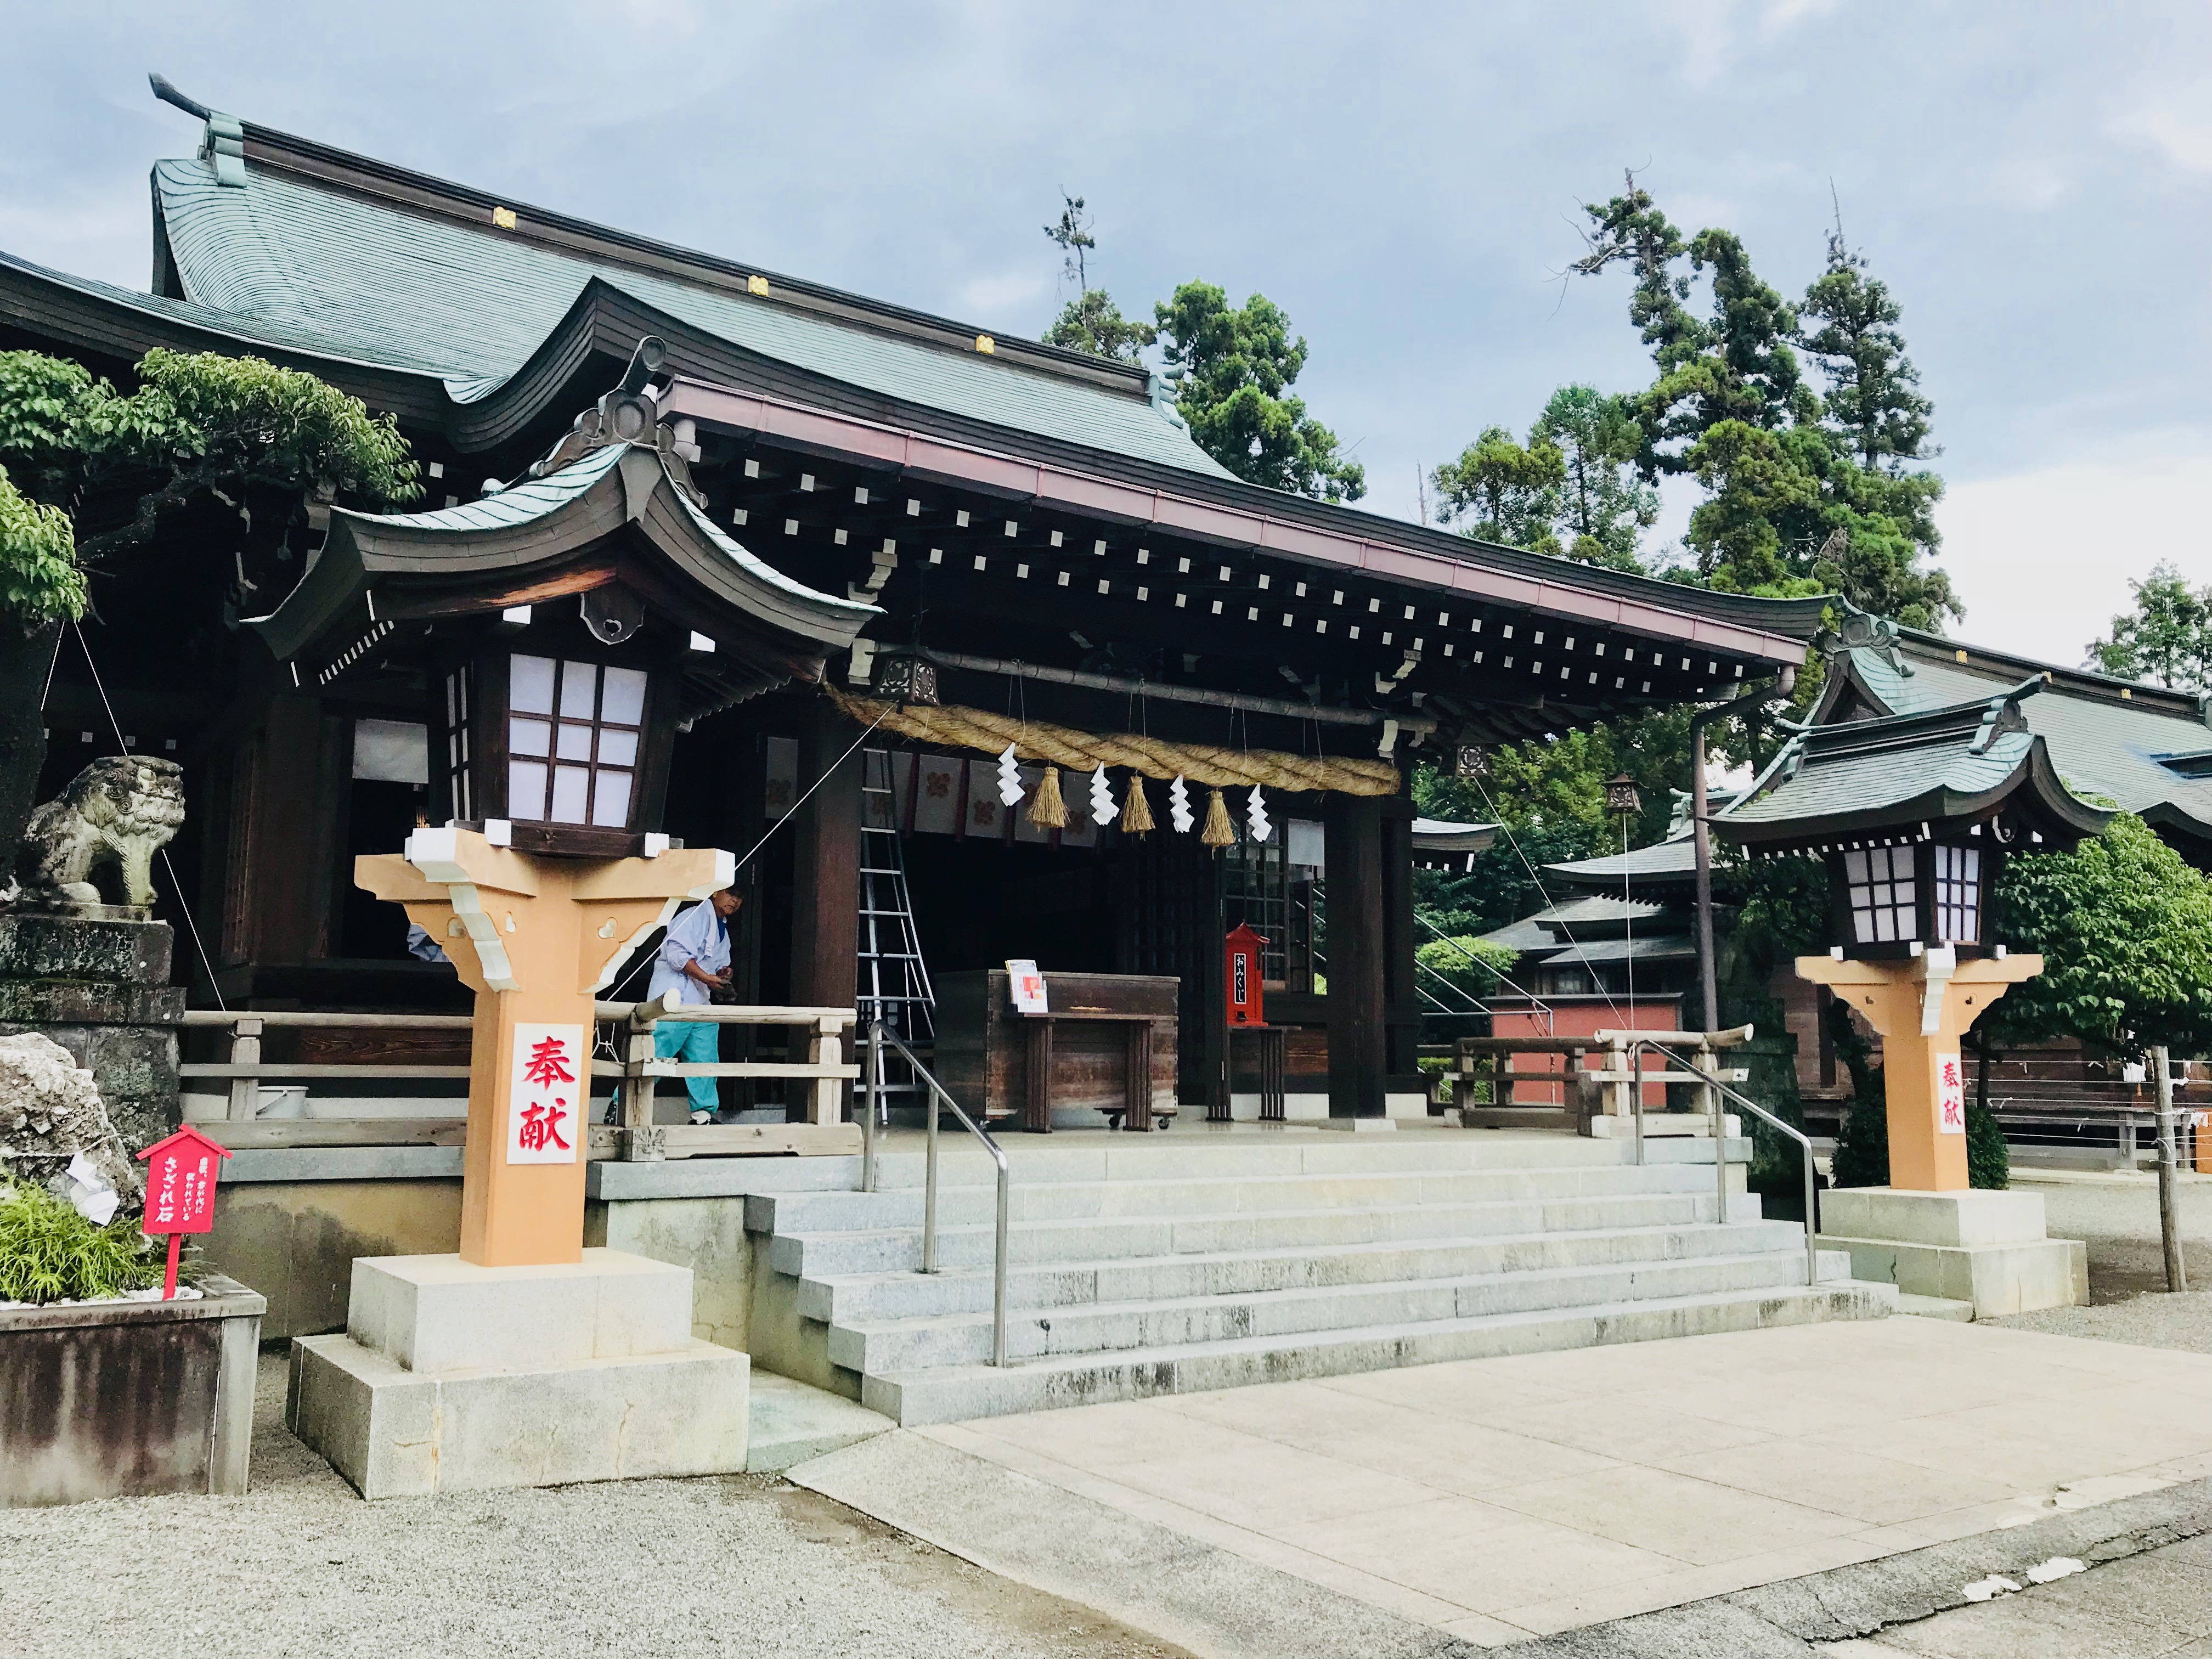 長崎市の住吉神社で美人な猫ちゃんに遭遇♪